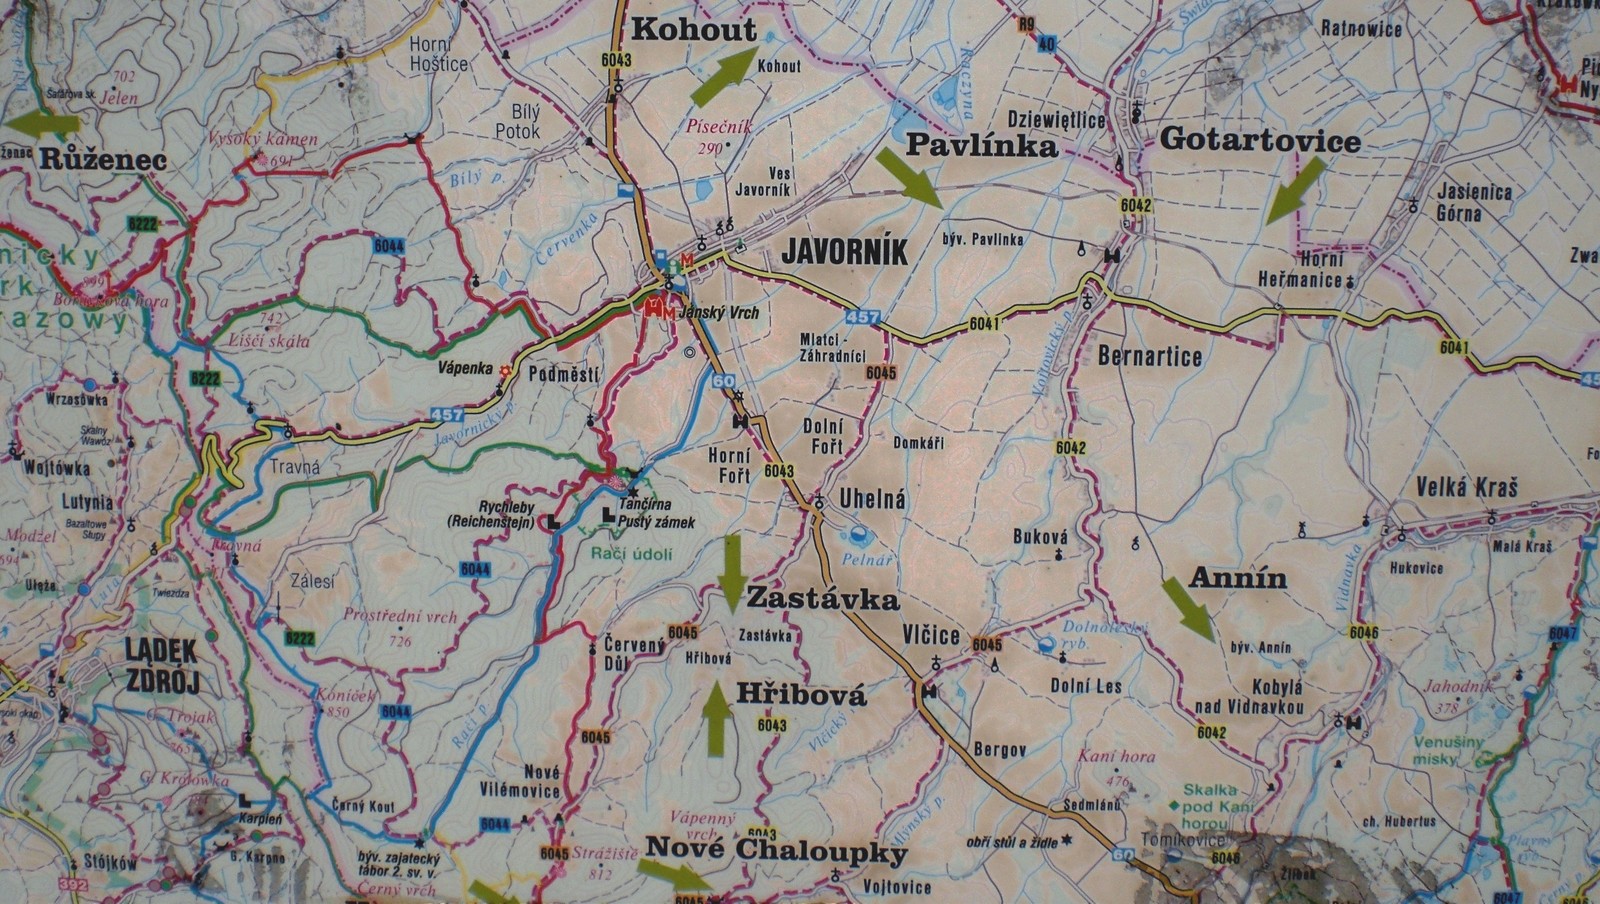 Zaniklé osady mapa.JPG